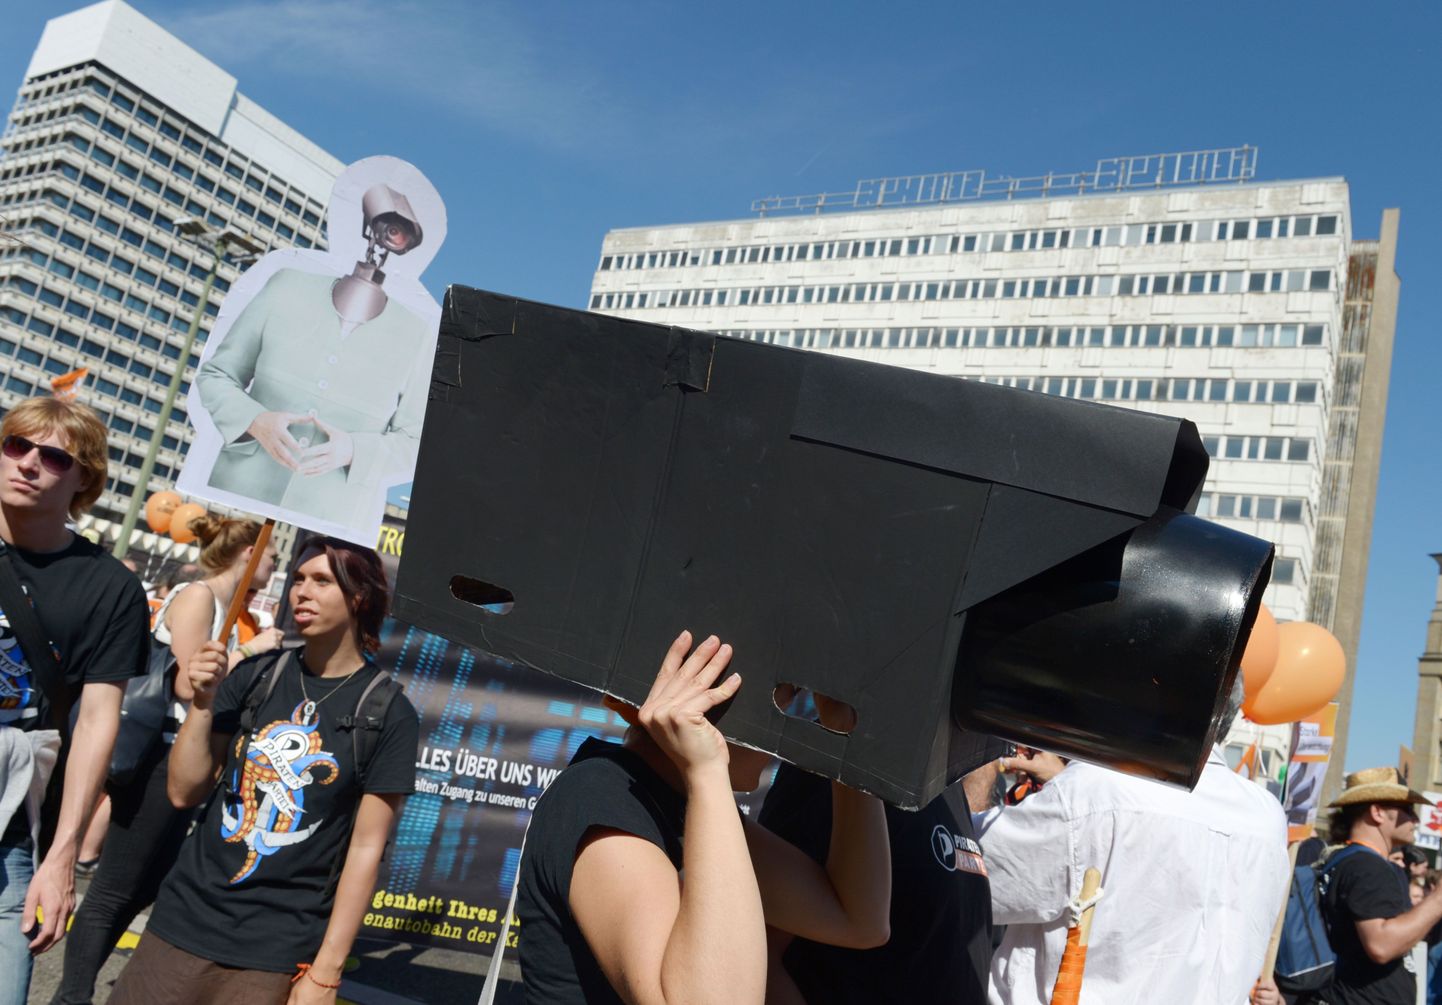 Eile toimus Berliinis jälitustegevuse vastane meeleavaldus.